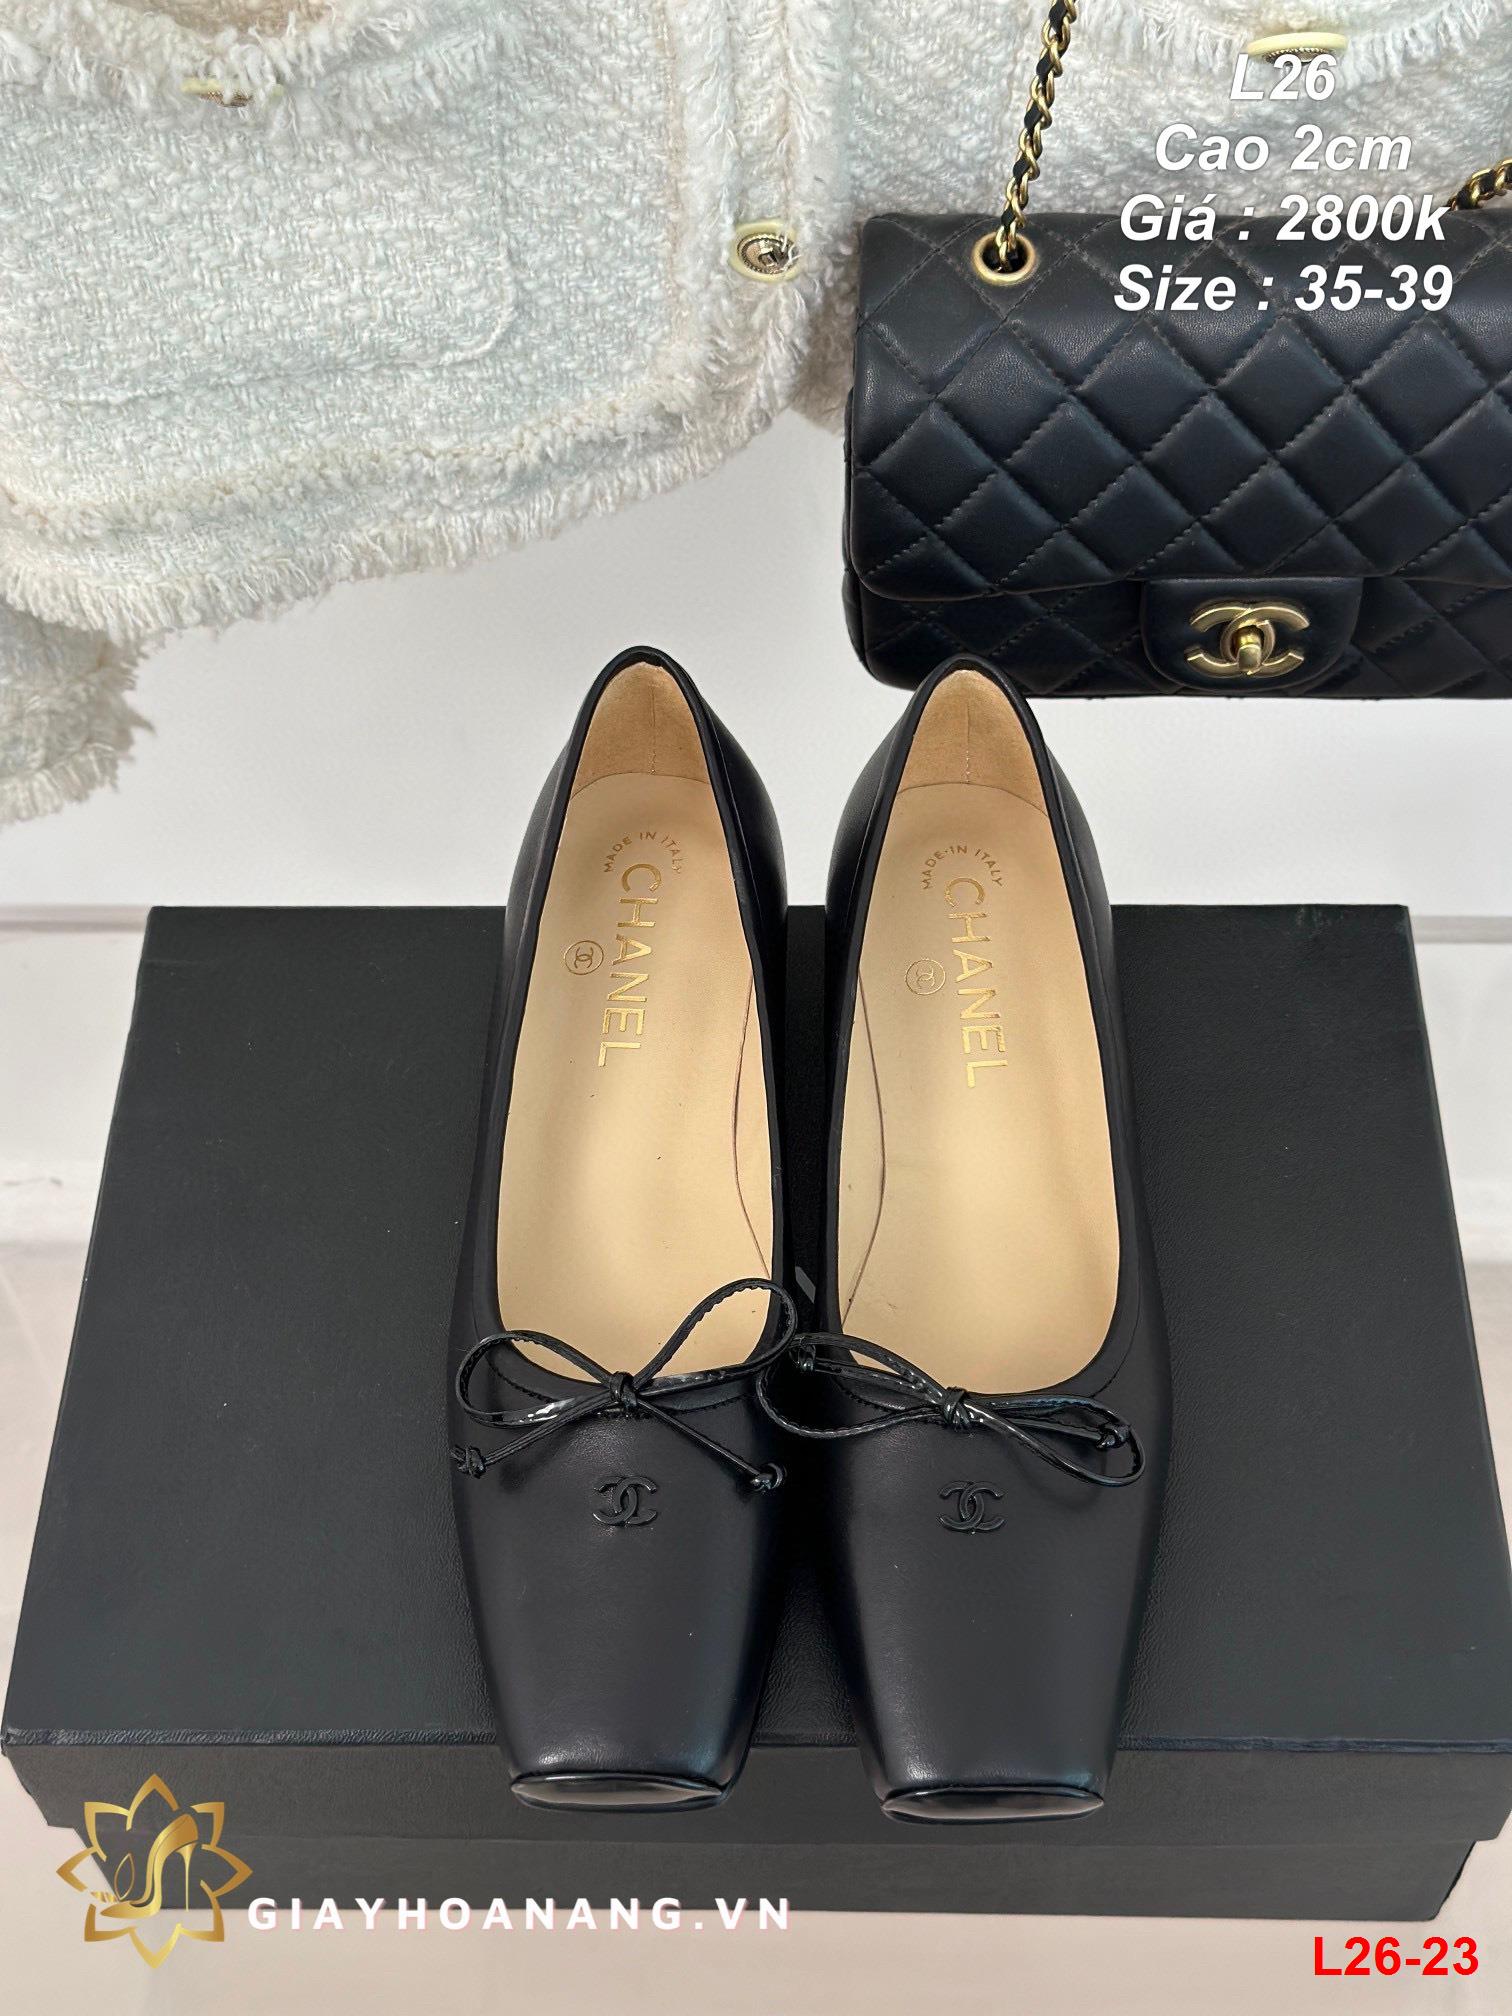 L26-23 Chanel giày cao 2cm siêu cấp